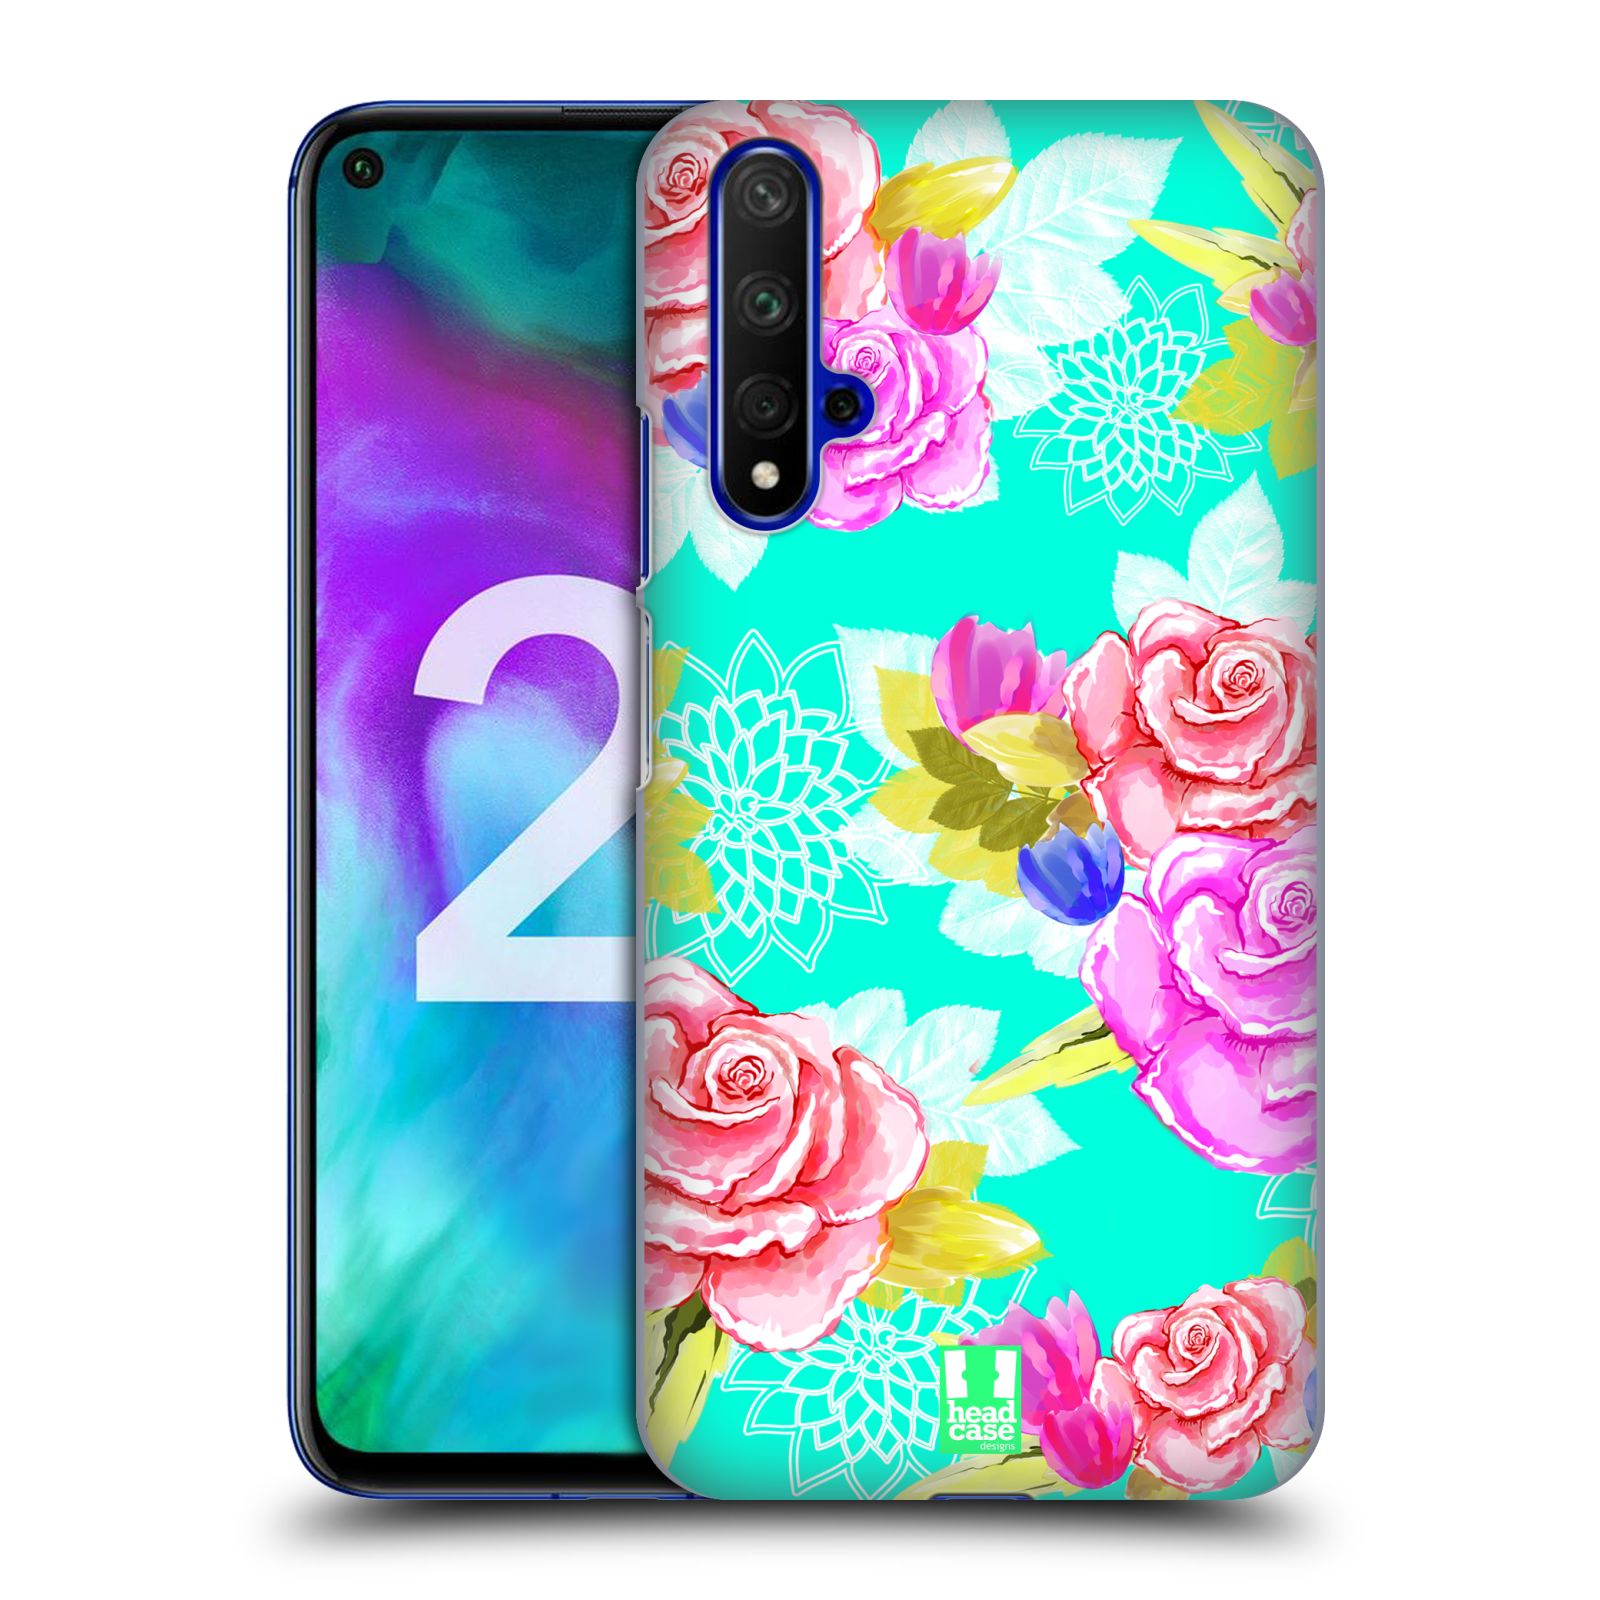 Pouzdro na mobil Honor 20 - HEAD CASE - vzor Malované květiny barevné AQUA MODRÁ